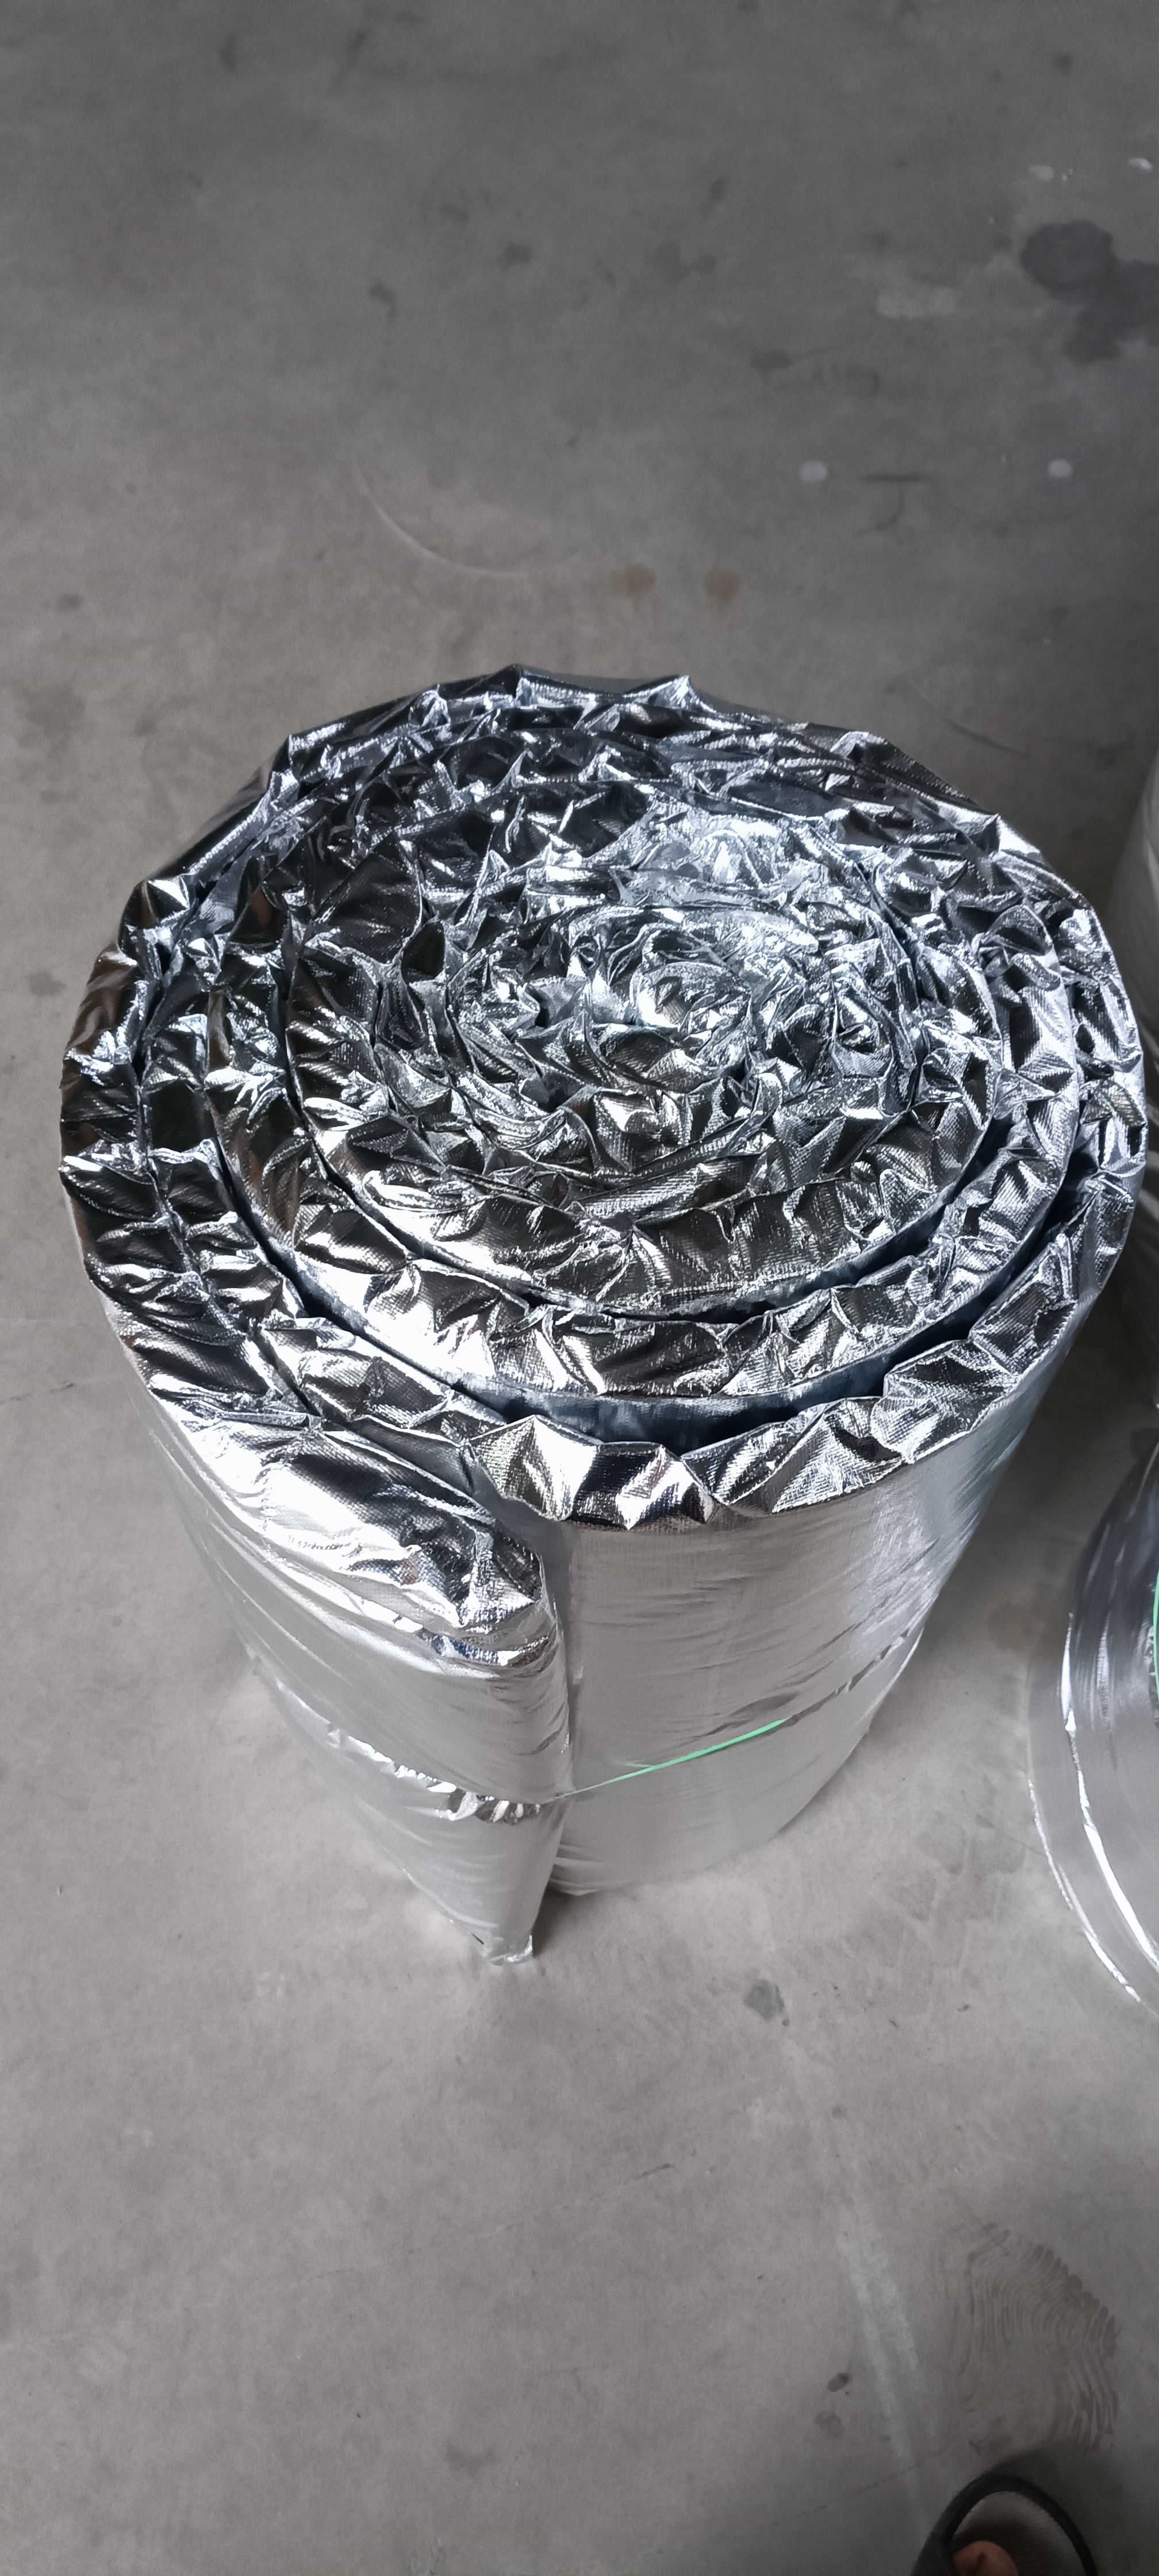 雅驰 硅酸铝隔热层异型加工彩色玻璃棉卷毡柔性材料切割厂家可拆卸保温套